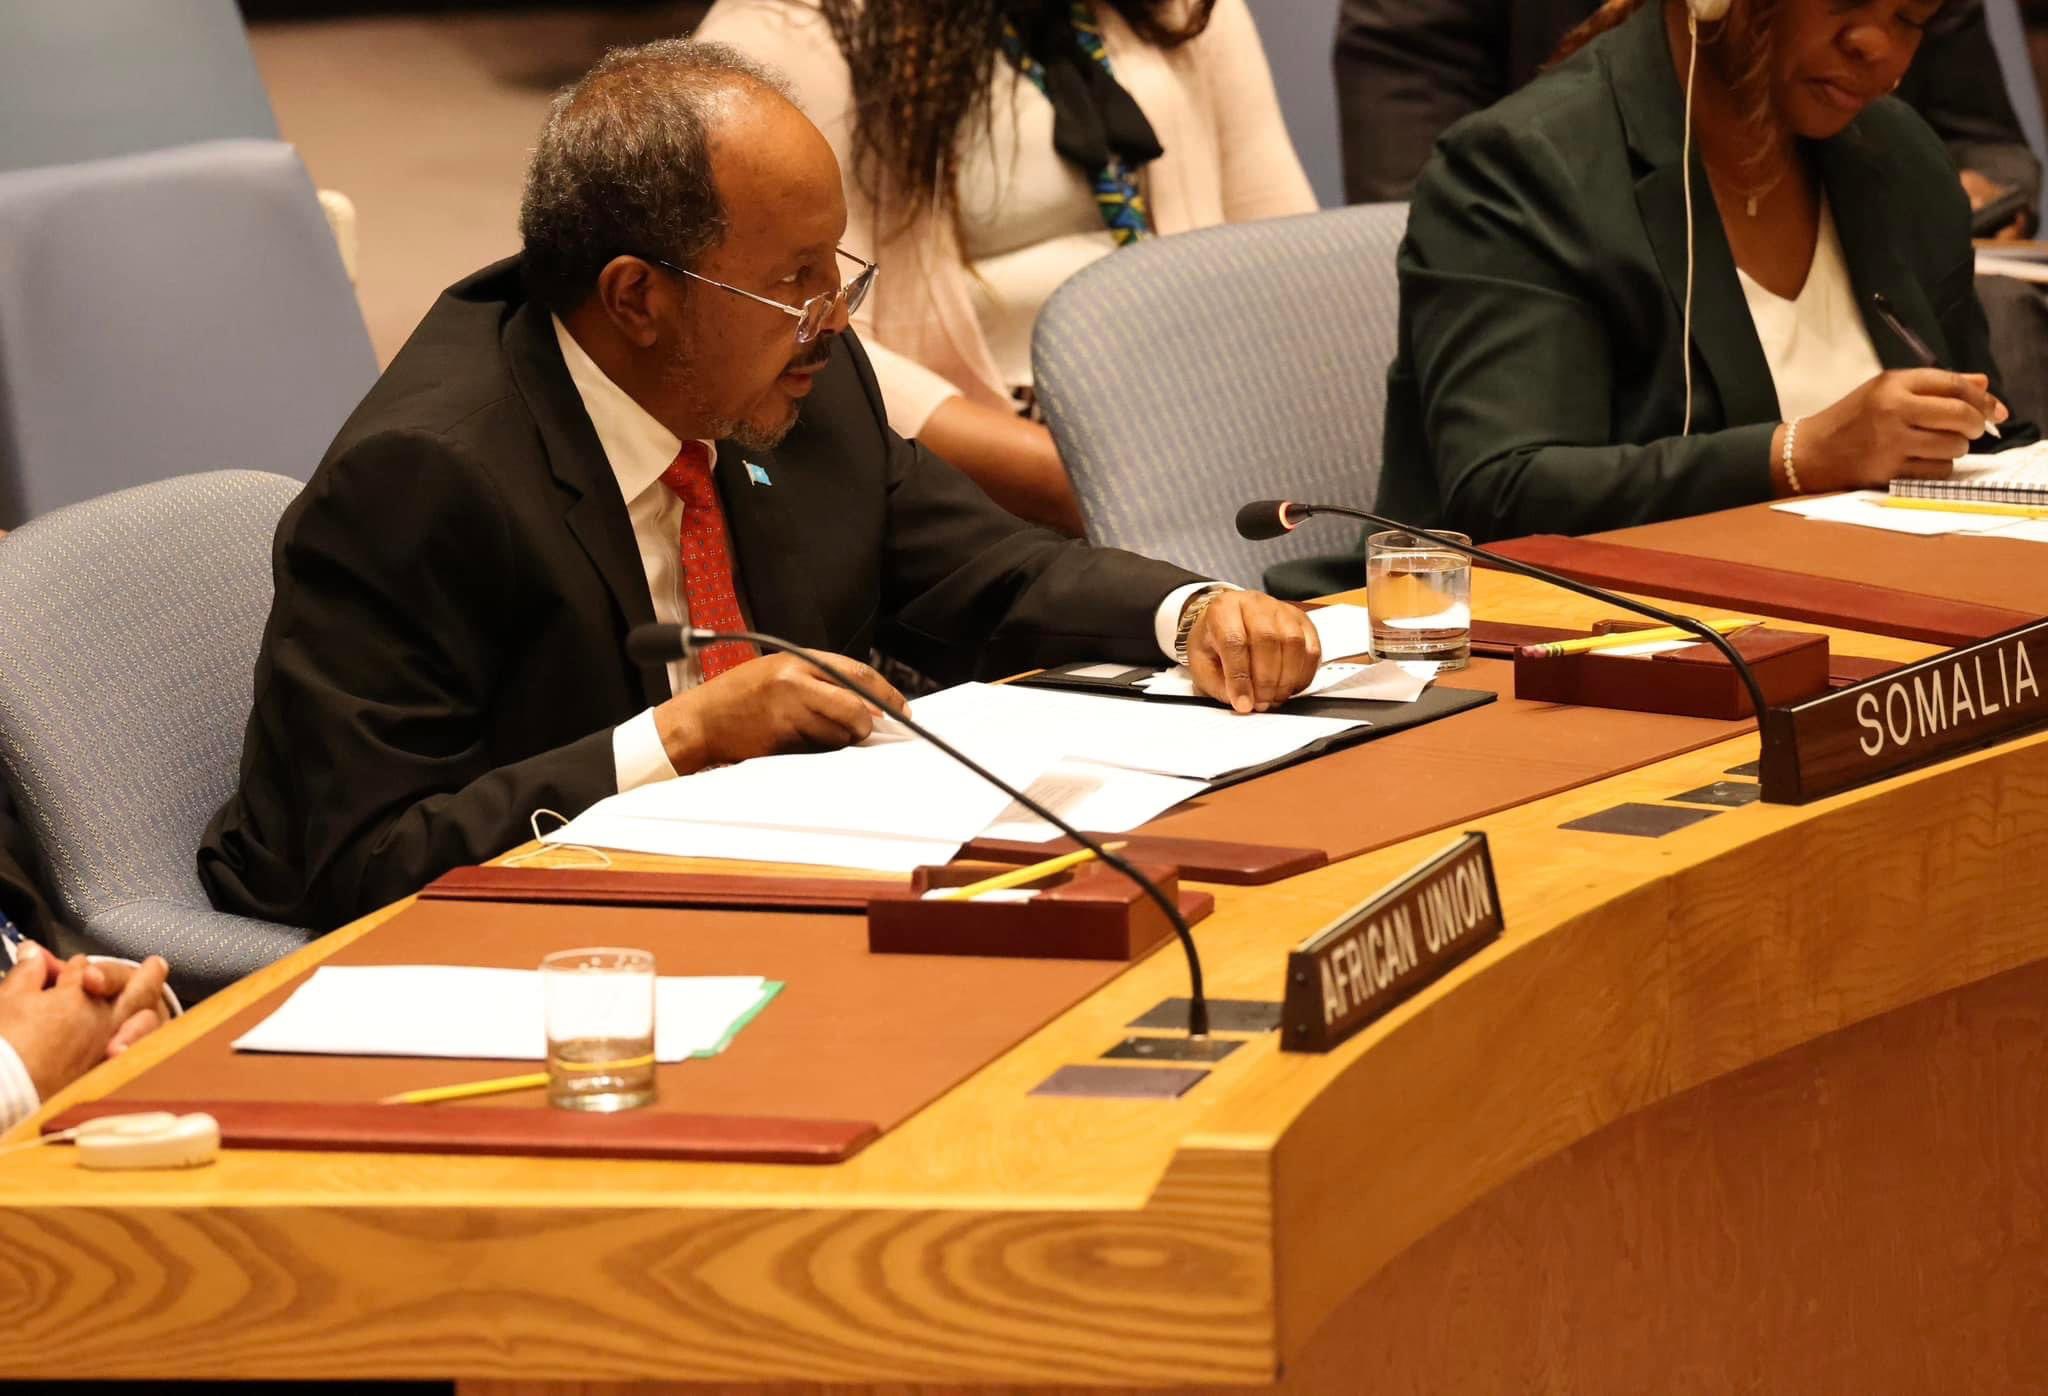 , الرئيس الصومالي يطالب مجلس الأمن برفع حظر الأسلحة المفروض على بلاده